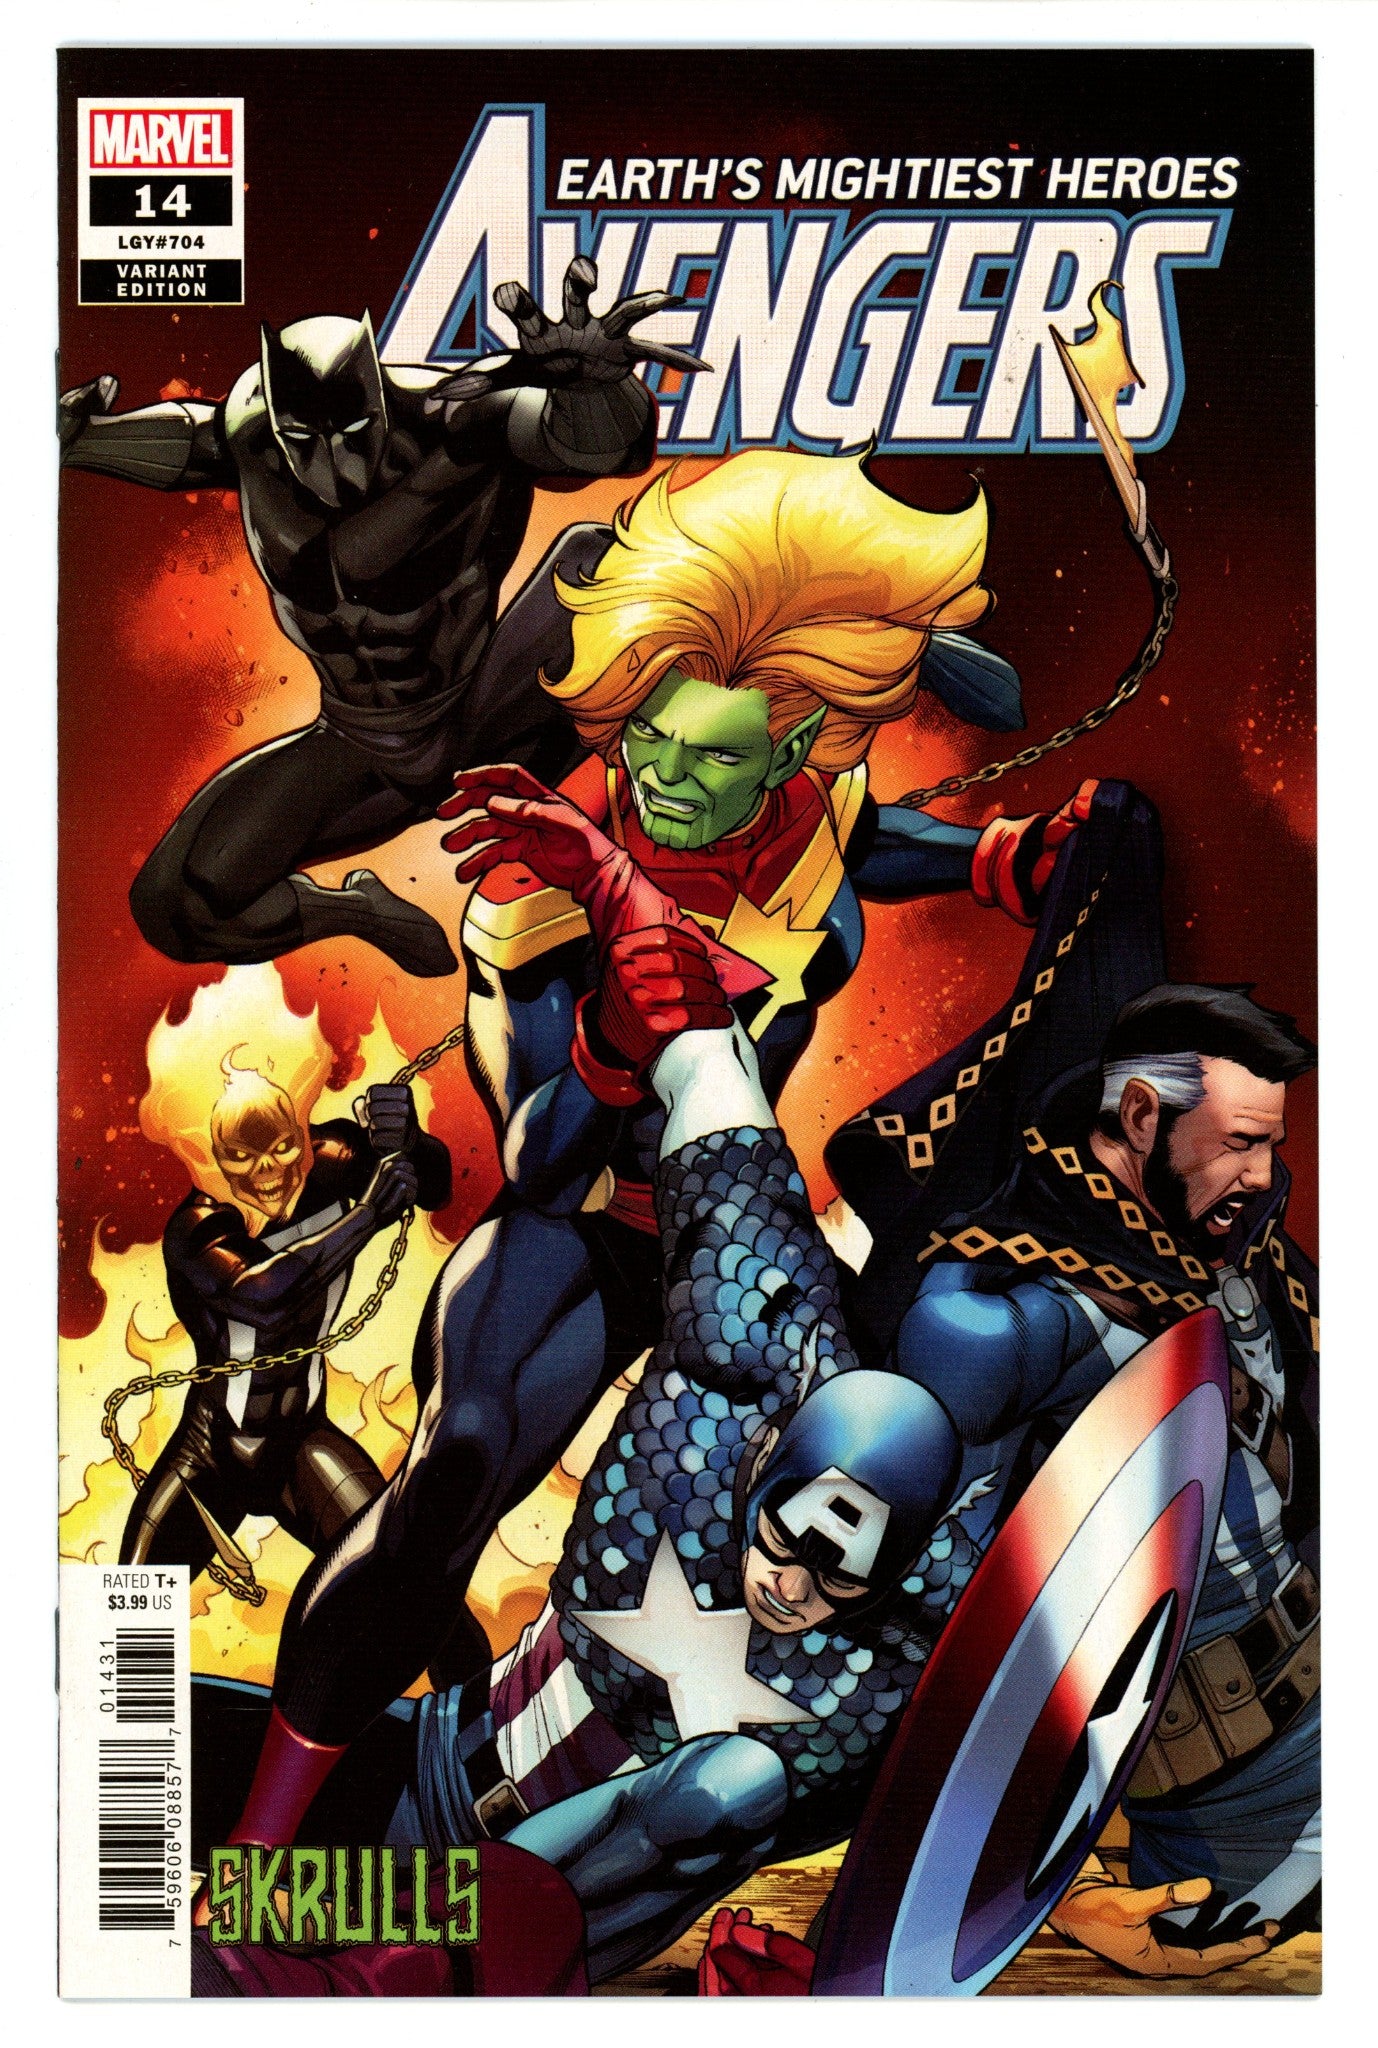 Avengers Vol 8 14 (704) High Grade (2019) Skrulls Variant 